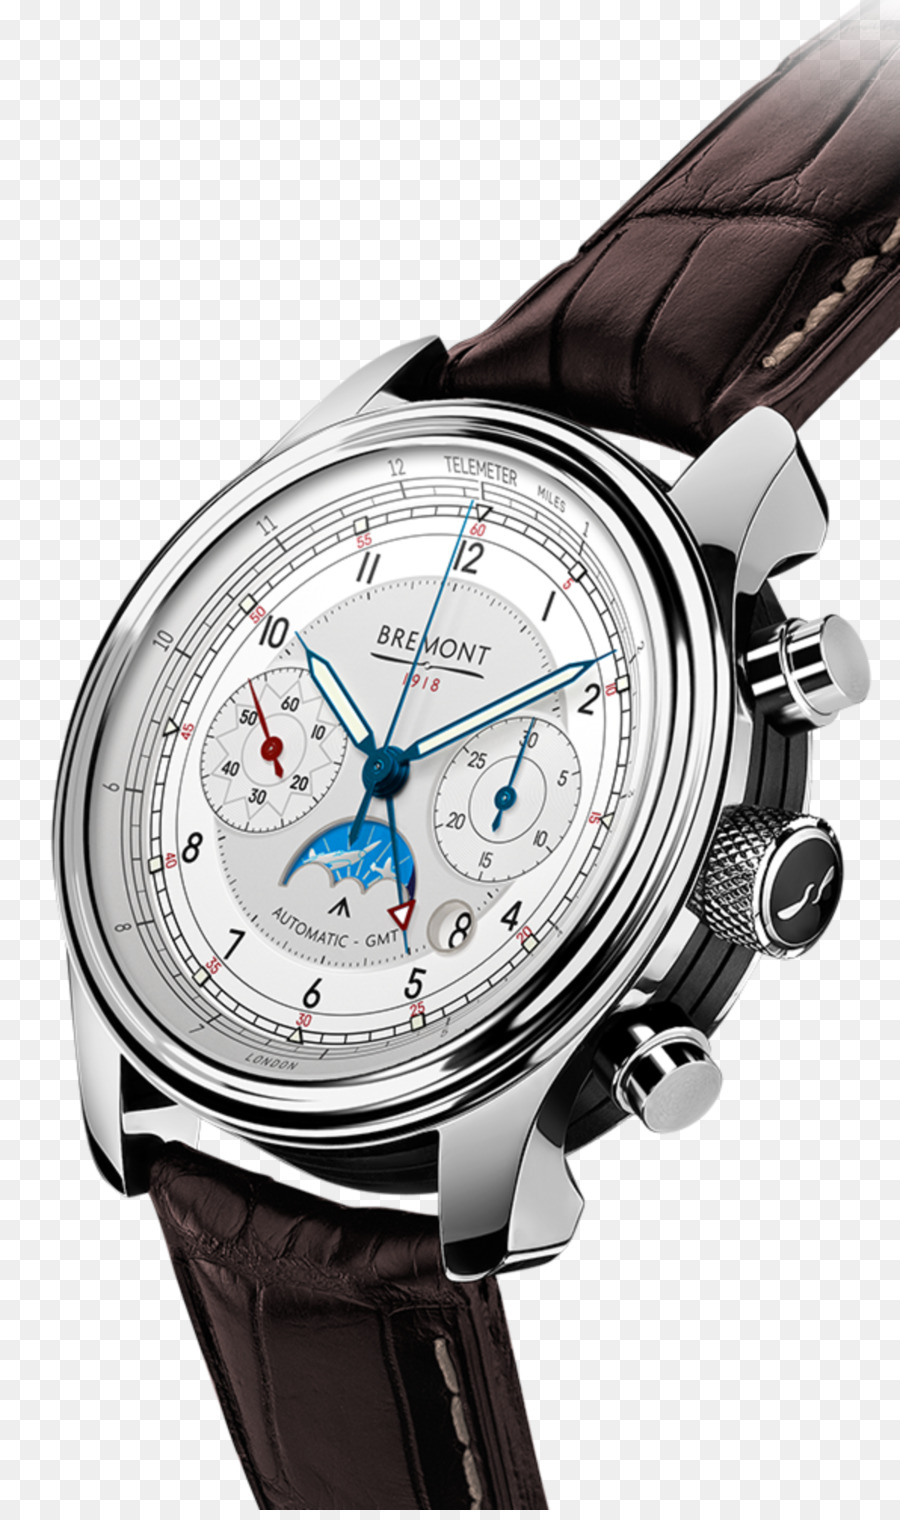 Bremont Azienda Orologio Cronografo Baselworld Cronometro orologio - guarda